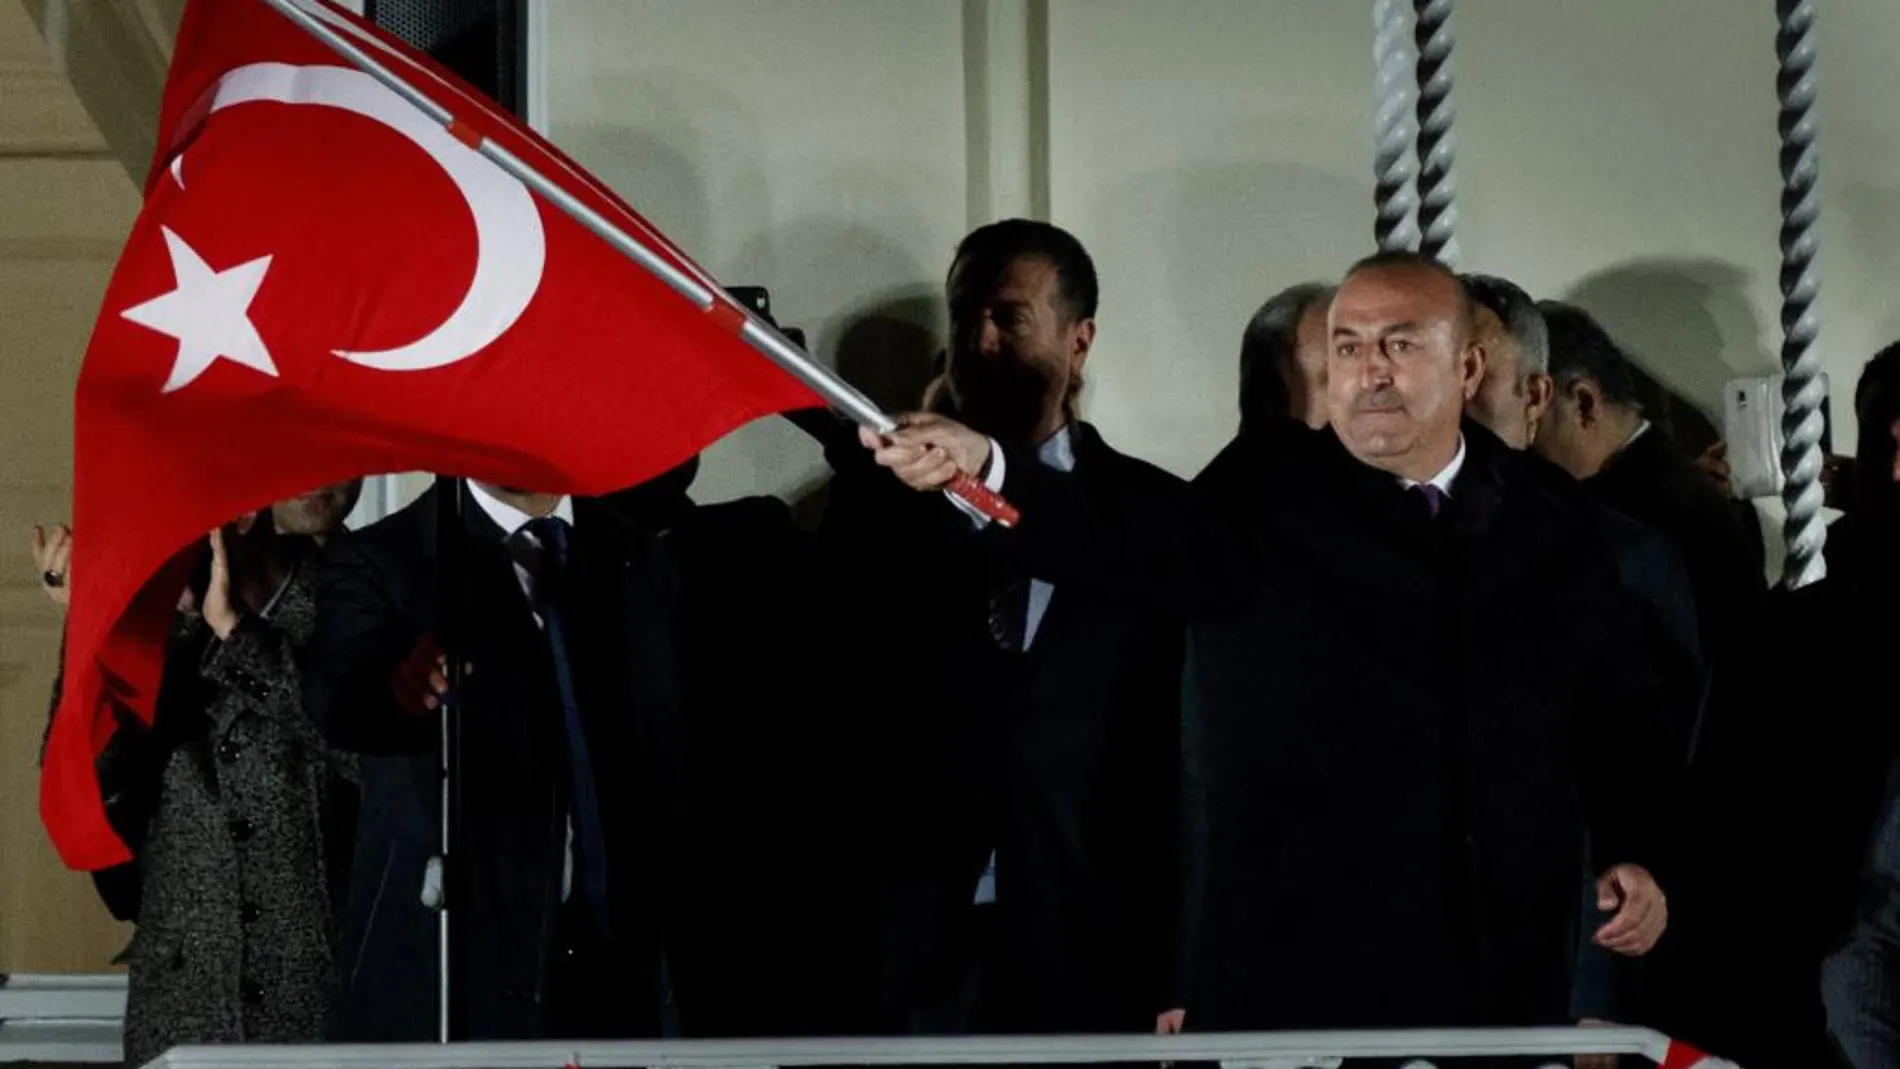 El ministro de Exteriores turco, Mevlut Cavusoglu (C), ondea la bandera turca ante seguidores del Gobierno de ese país, en los jardines del Consulado de Turquía en Hamburgo